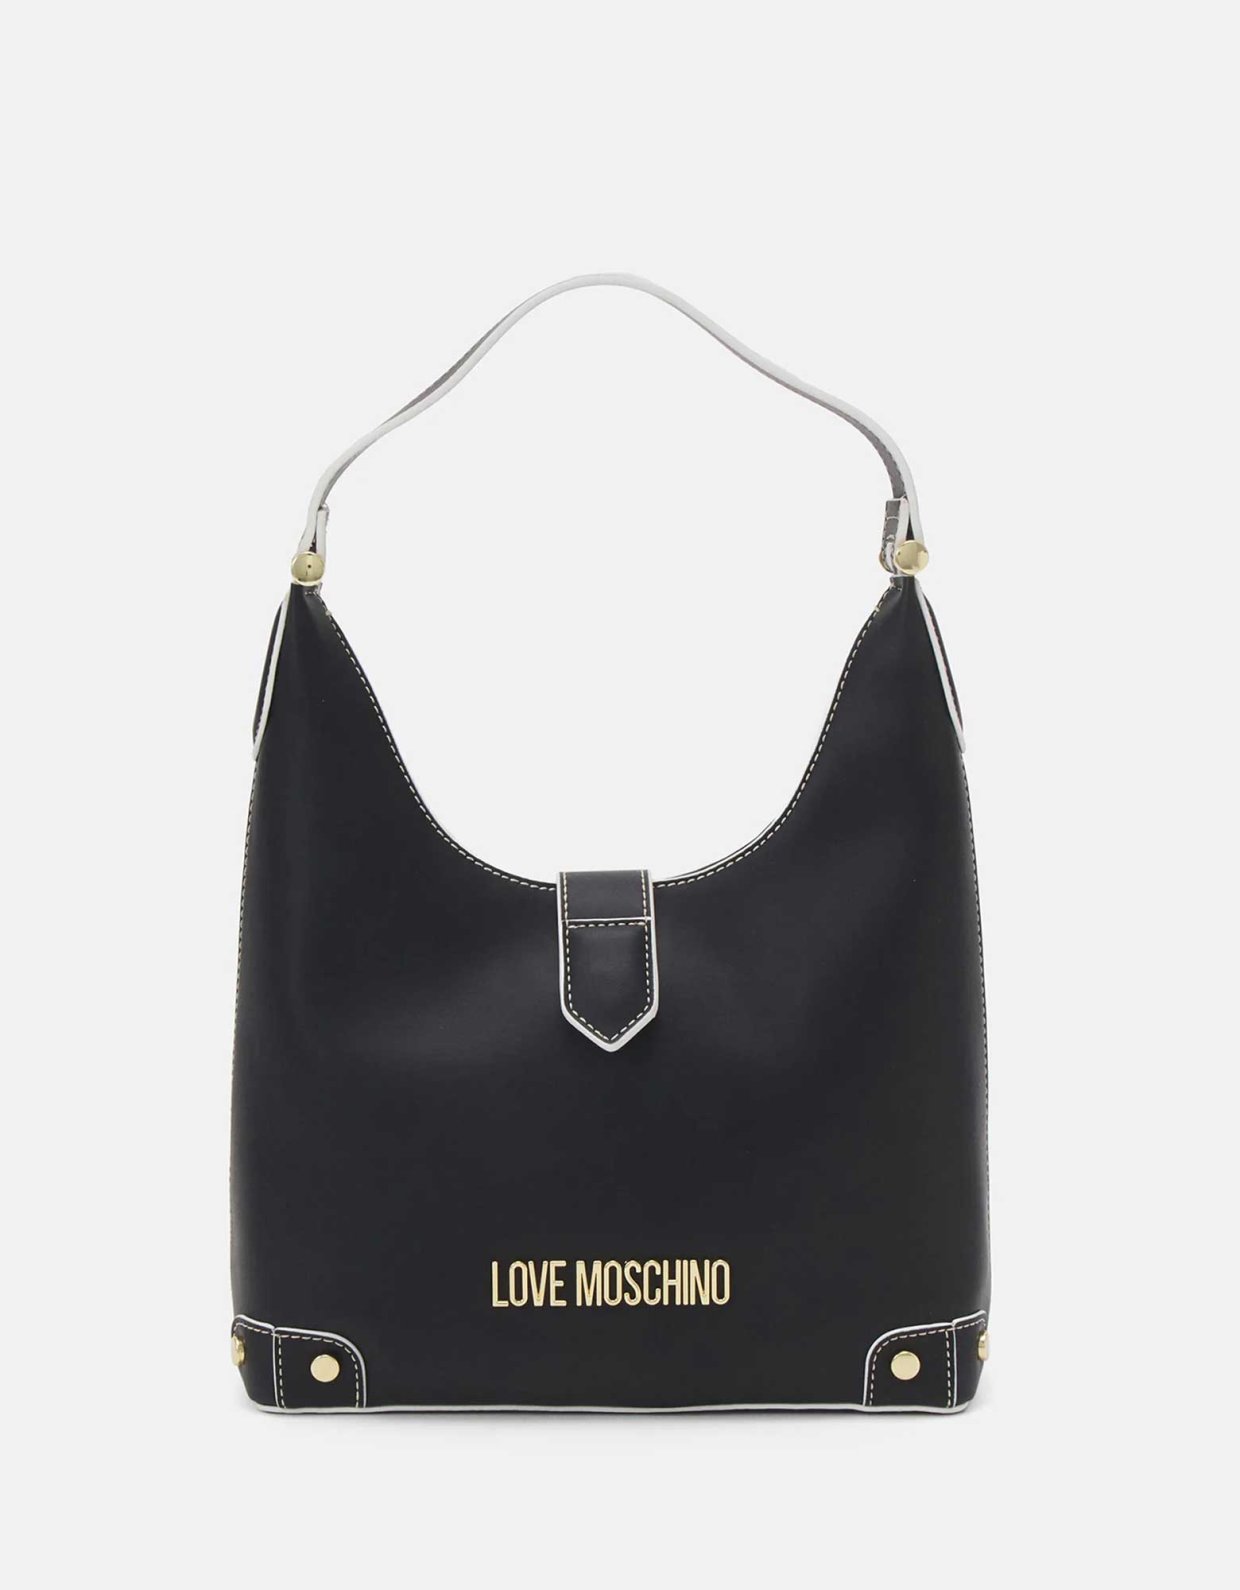 Love Moschino Bunny hobo bag black